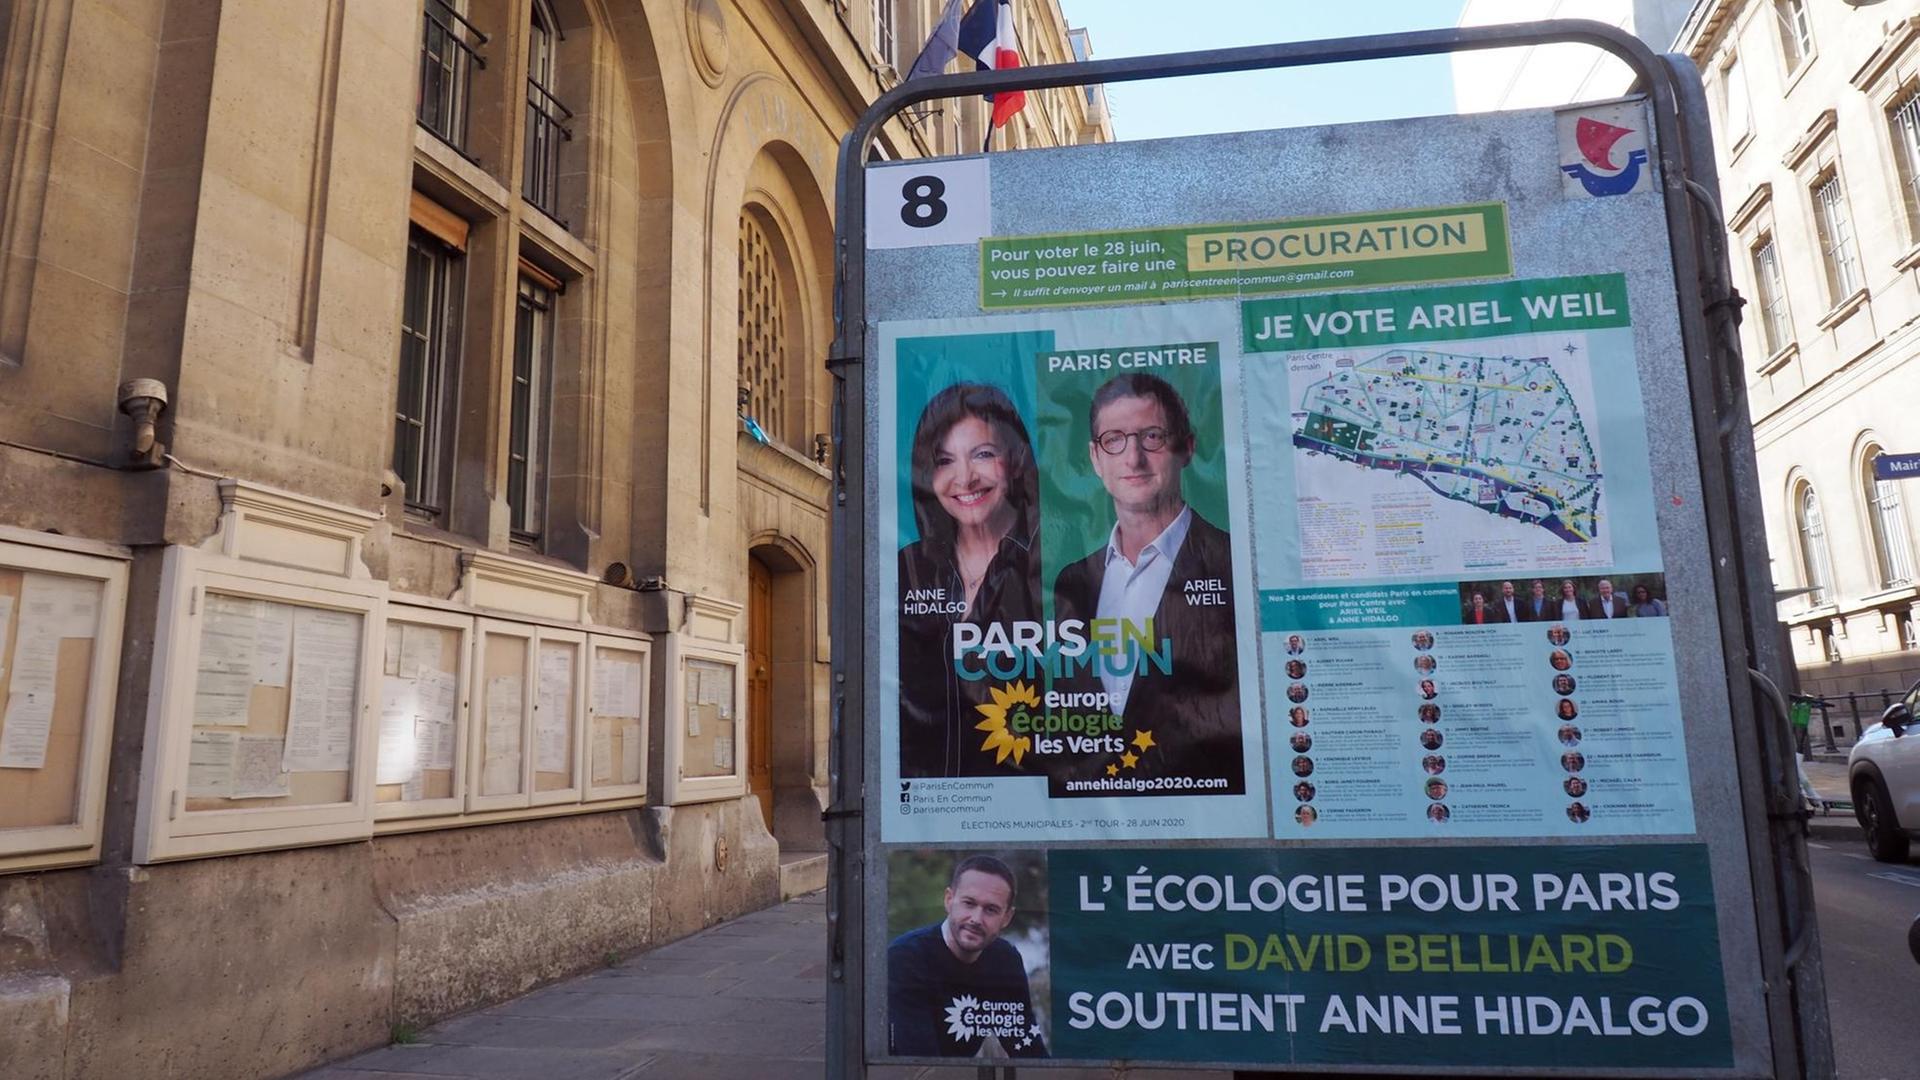 Wahlkampfplakate für die Kommunalwahl an diesem Sonntag (28.06.2020) stehen im zweiten Pariser Stadbezirk vor dem Bezirksrathaus.